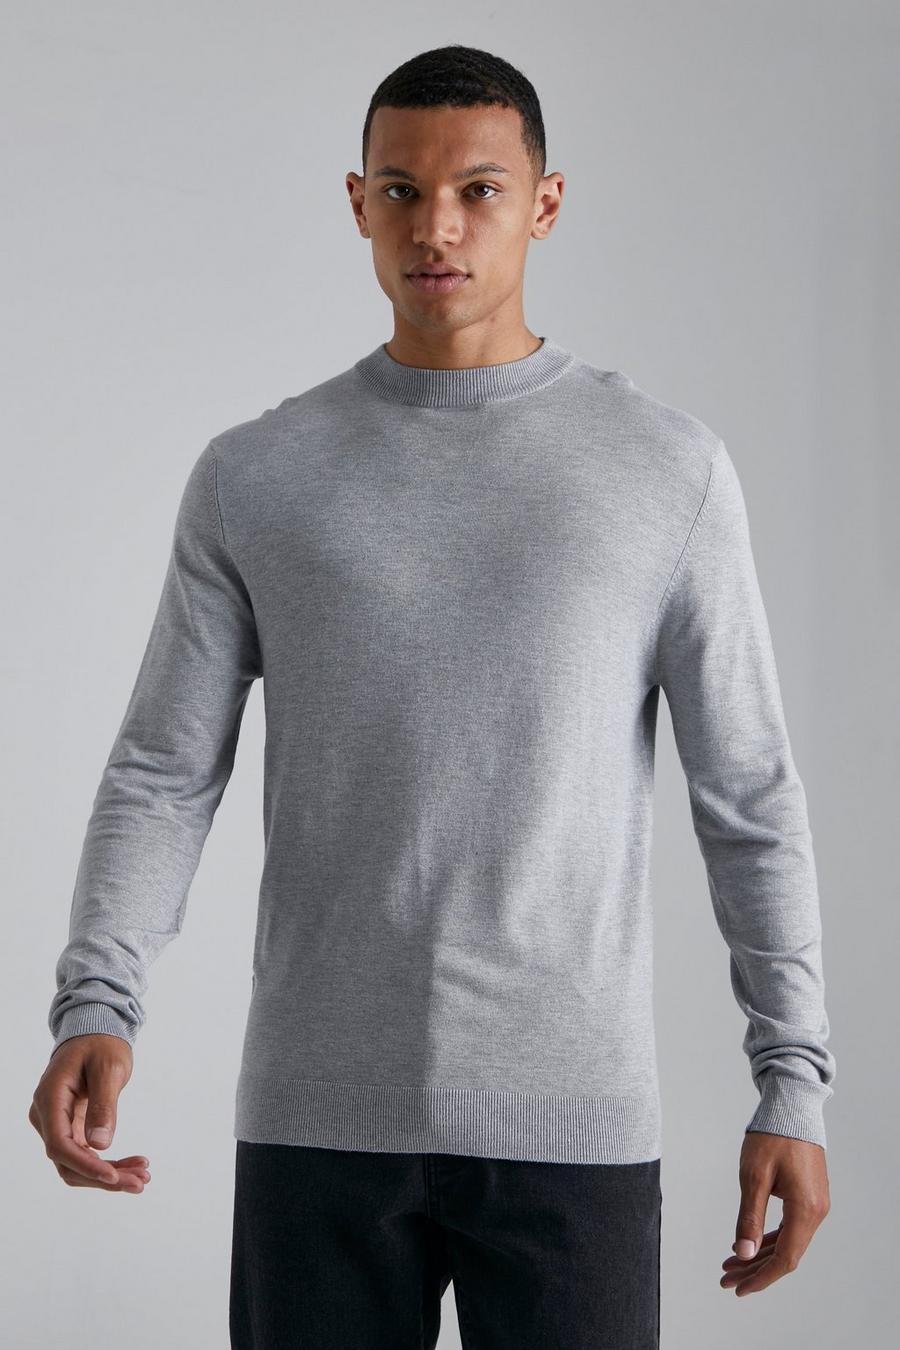 סלע אפור grey סוודר בגזרה רגילה עם צווארון גולף, לגברים גבוהים